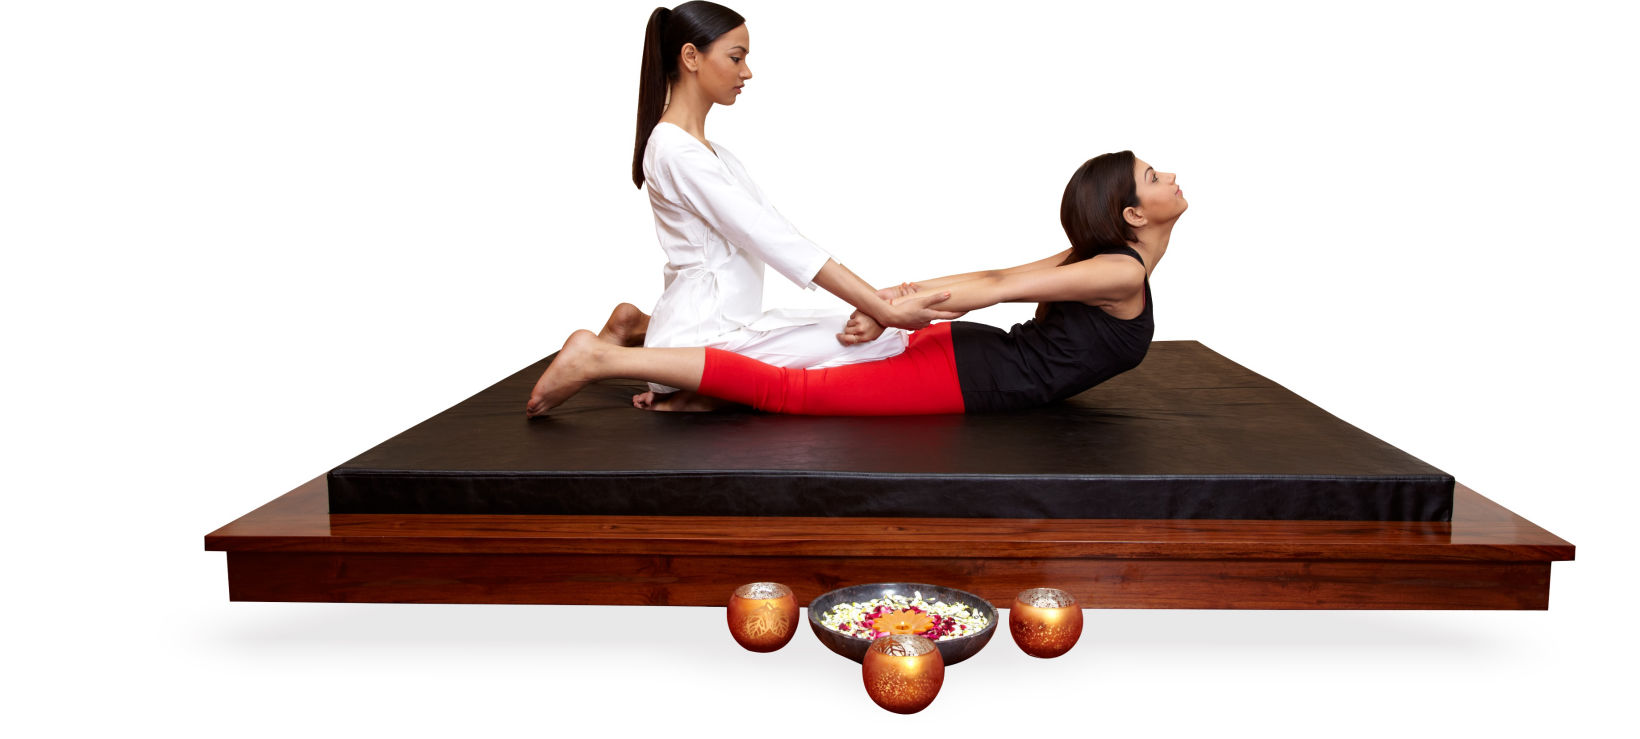 Thai Massage Bed